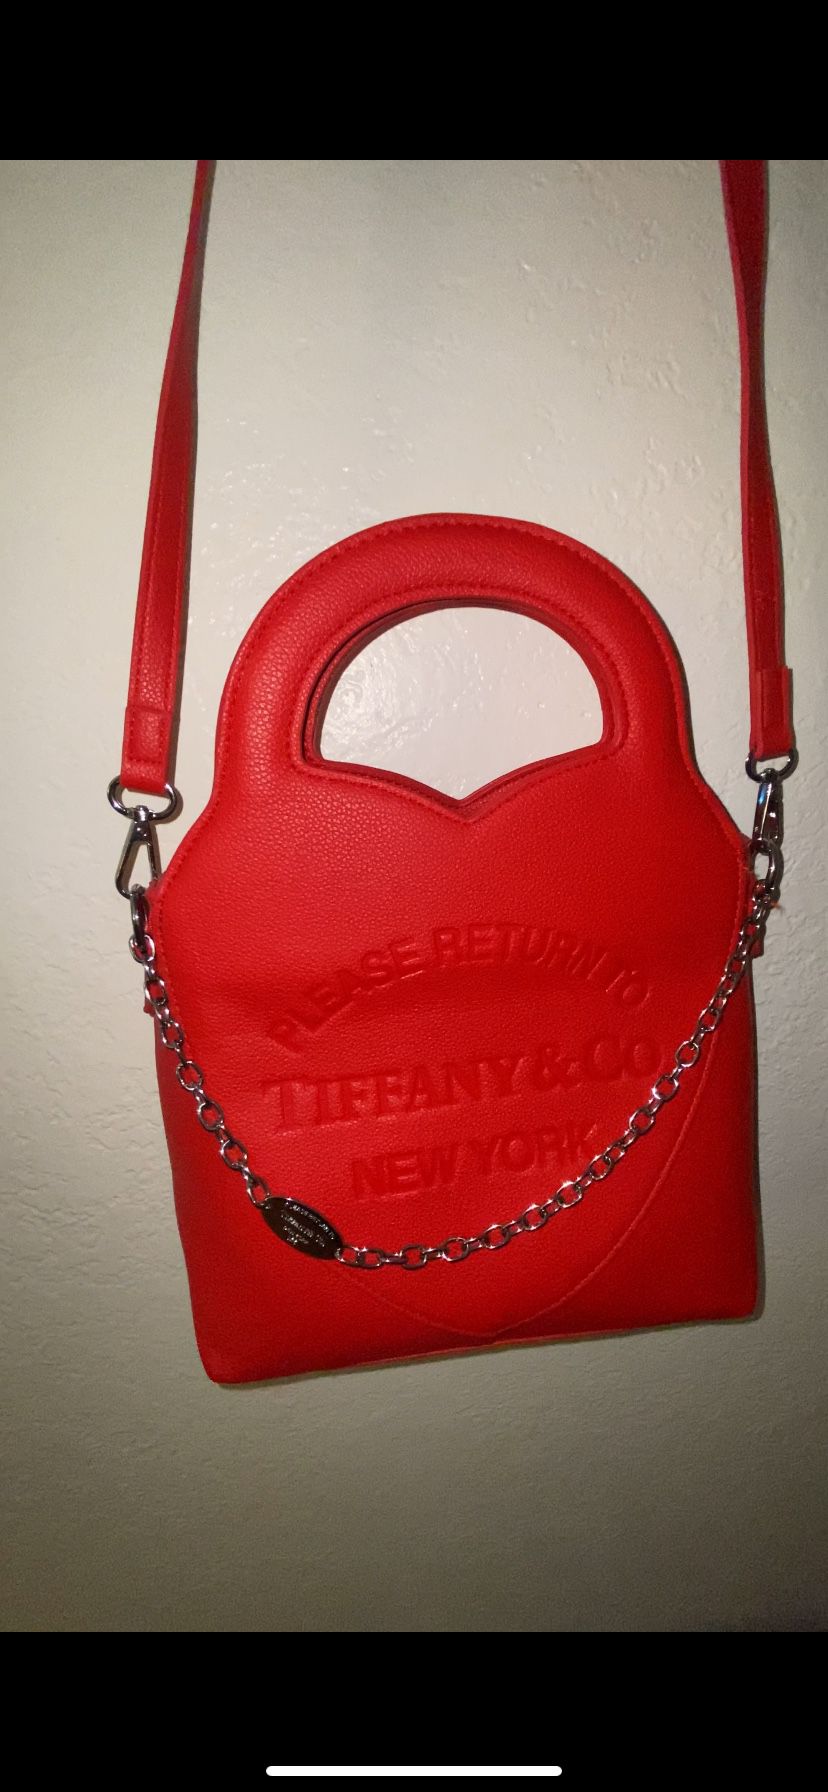 Tiffany Red Handbag/Crossbody